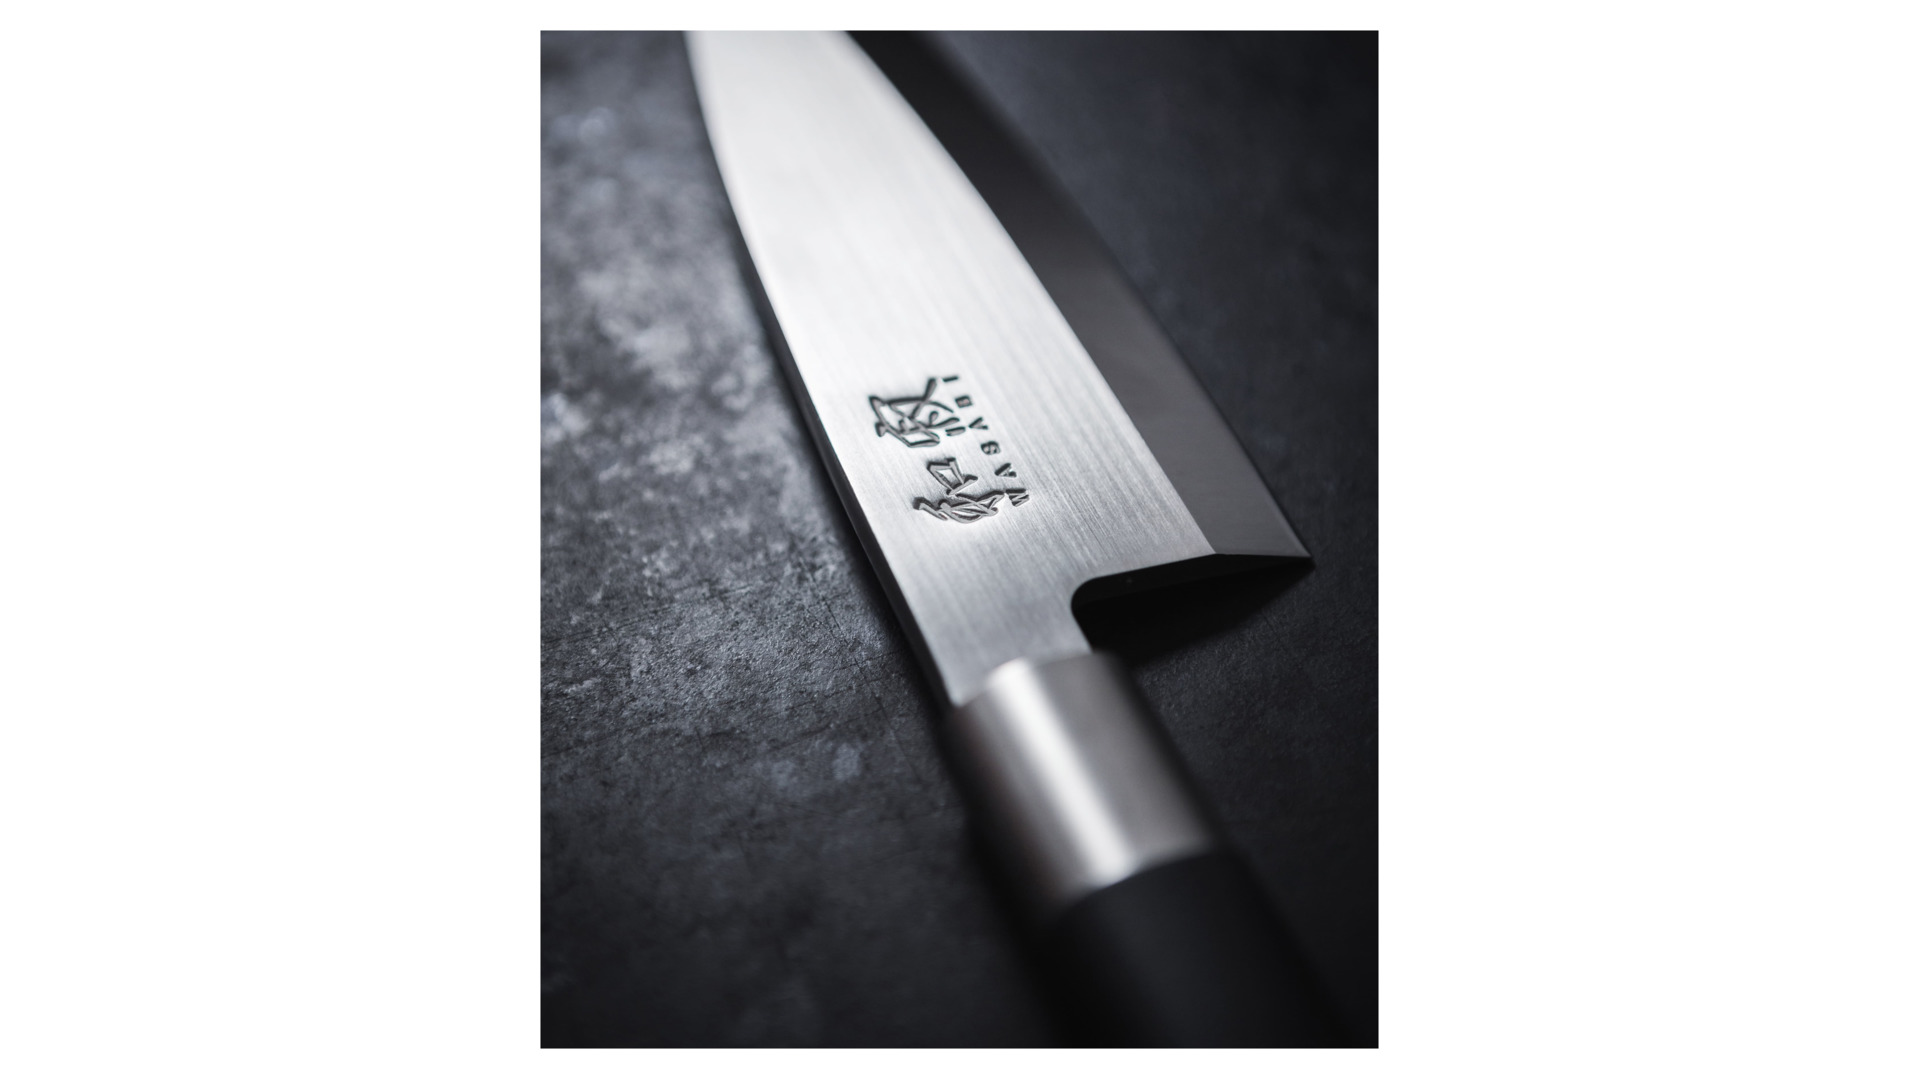 Нож хлебный KAI Васаби 23 см, сталь, ручка пластик